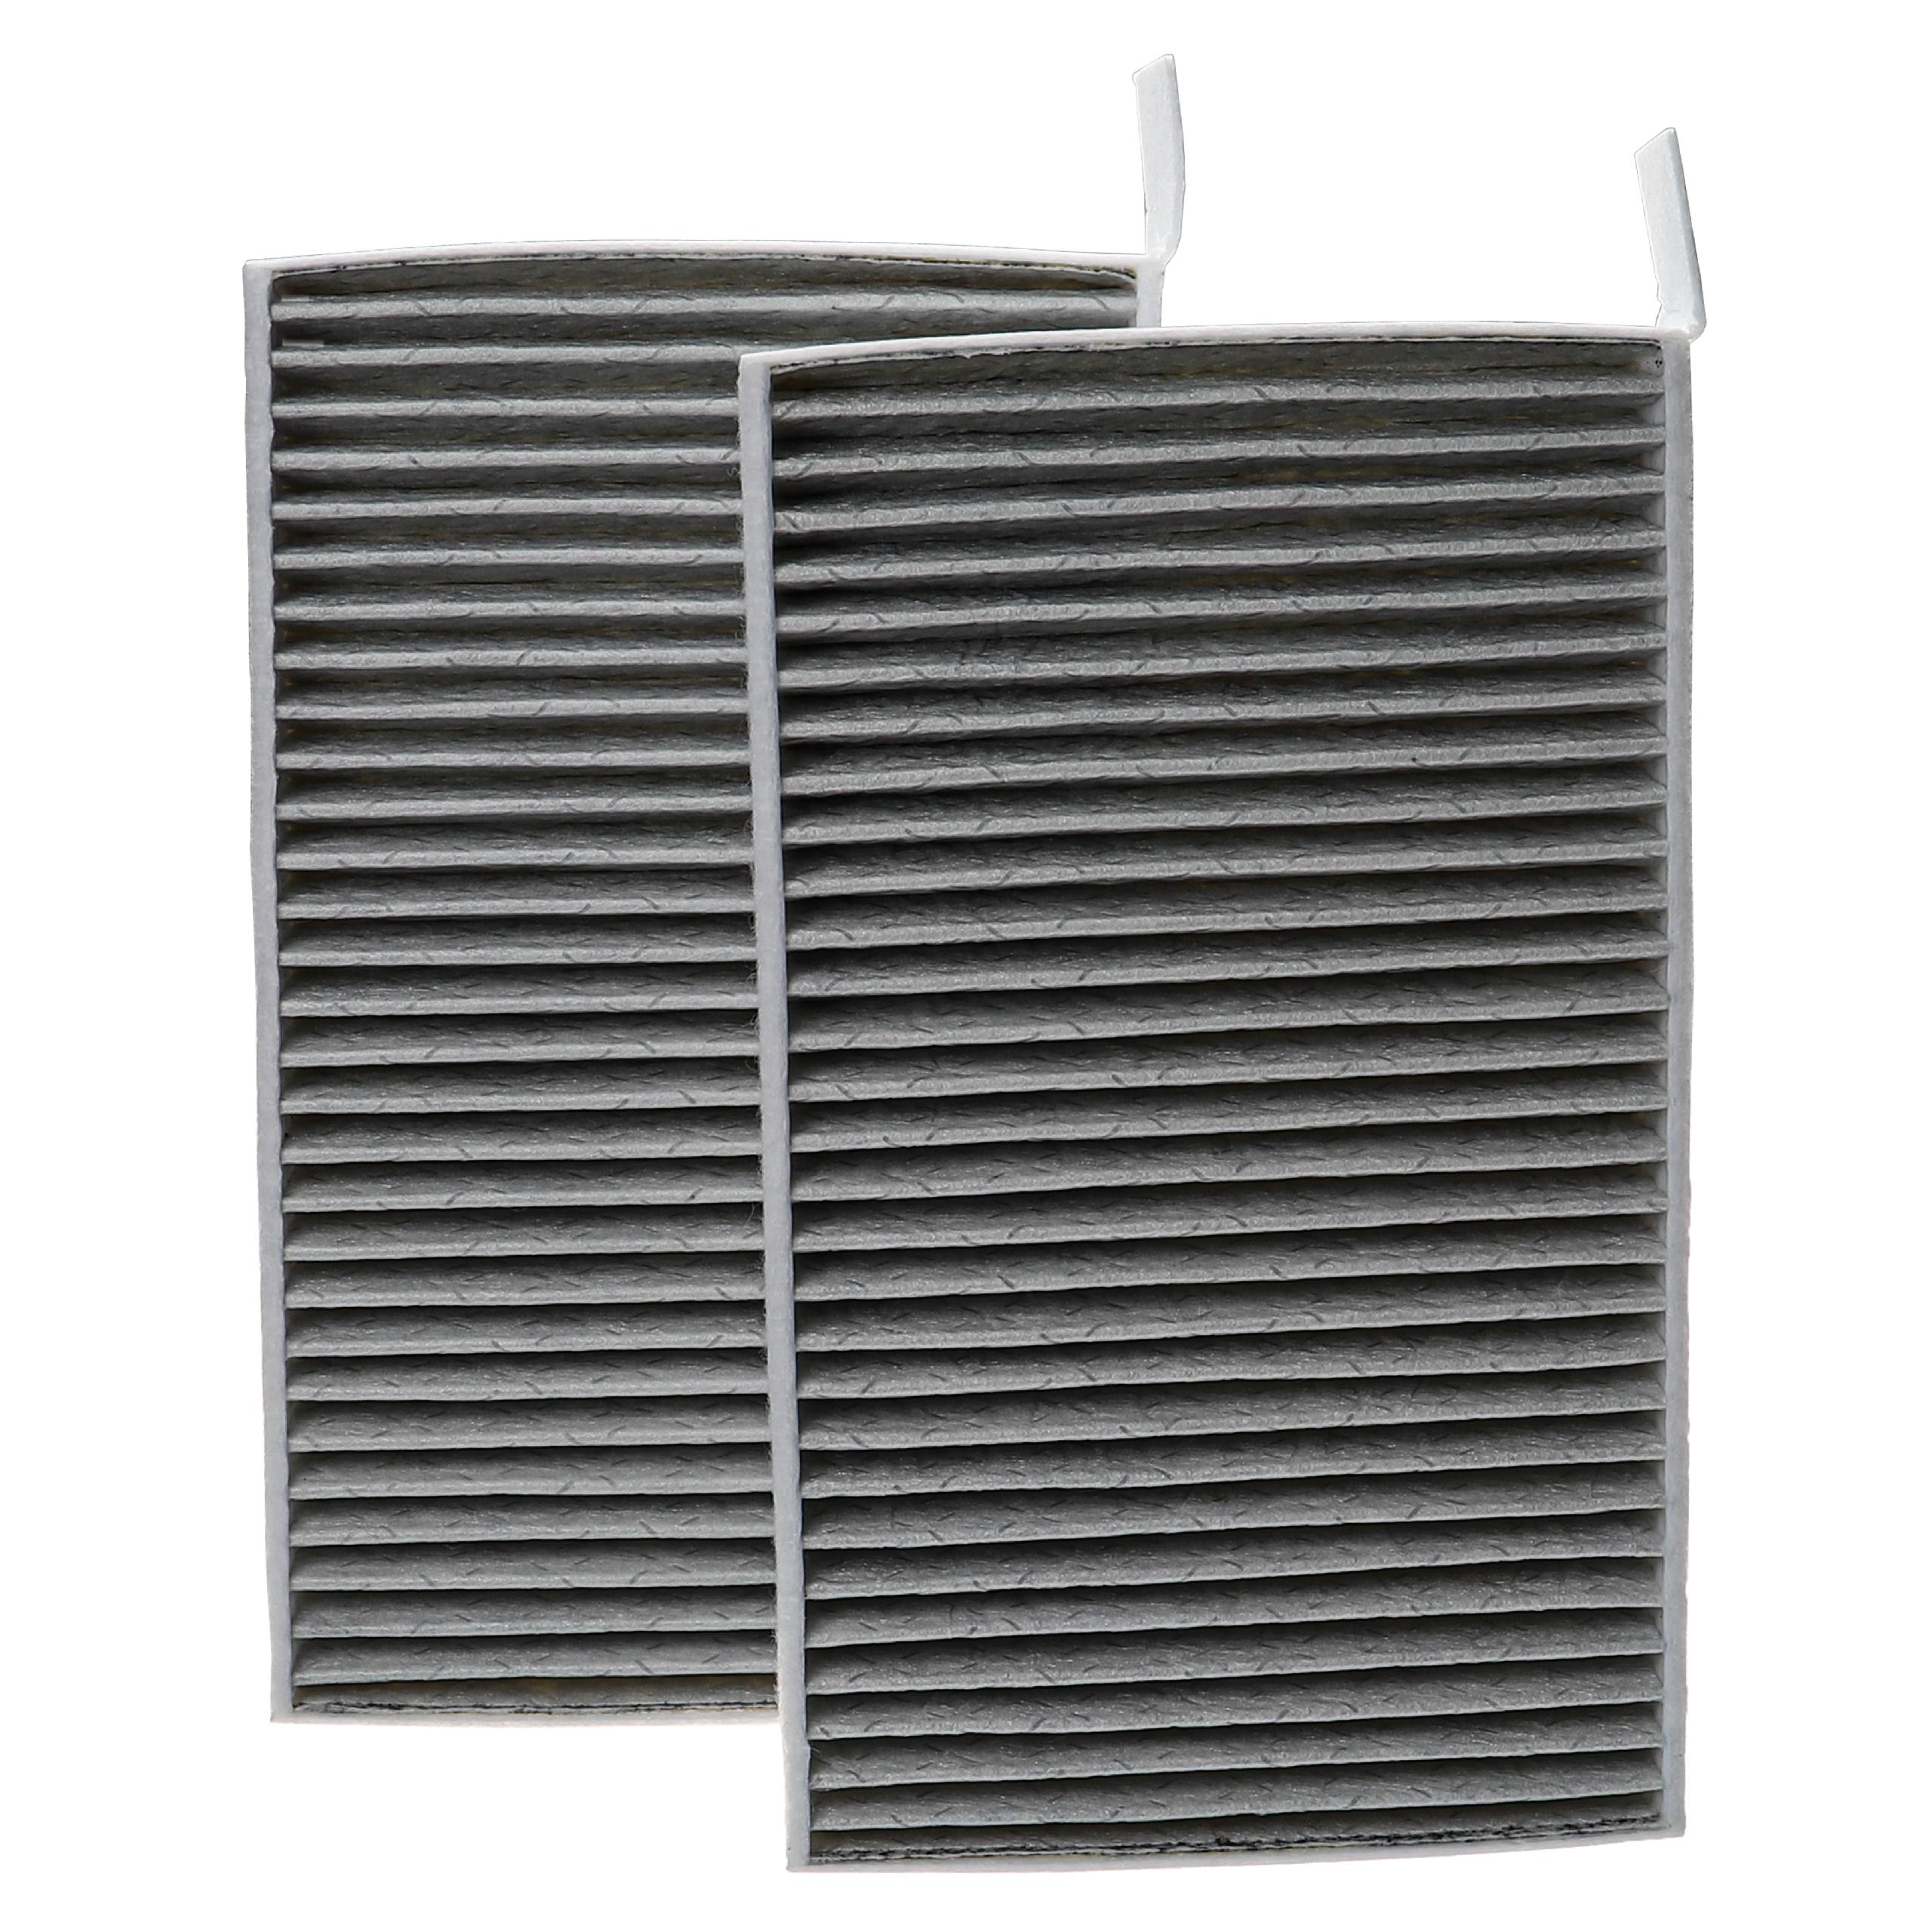 vhbw filtre à air de rechange 20,5 x 13 x 4,5cm blanc pour humidificateur épurateur dair comme ACA-3E 